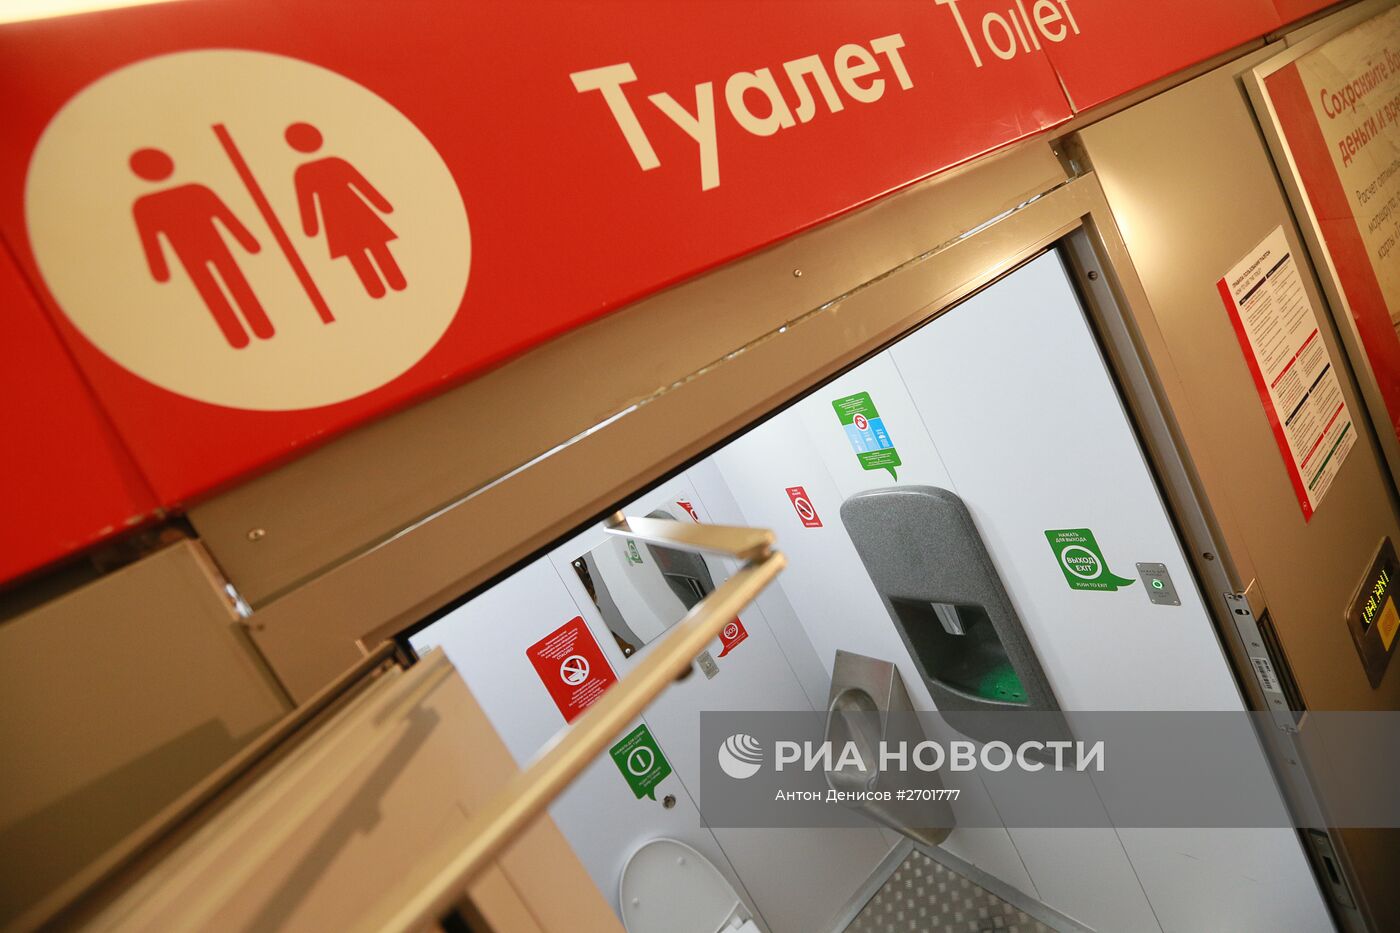 Открытие общественного туалета в Московском метрополитене